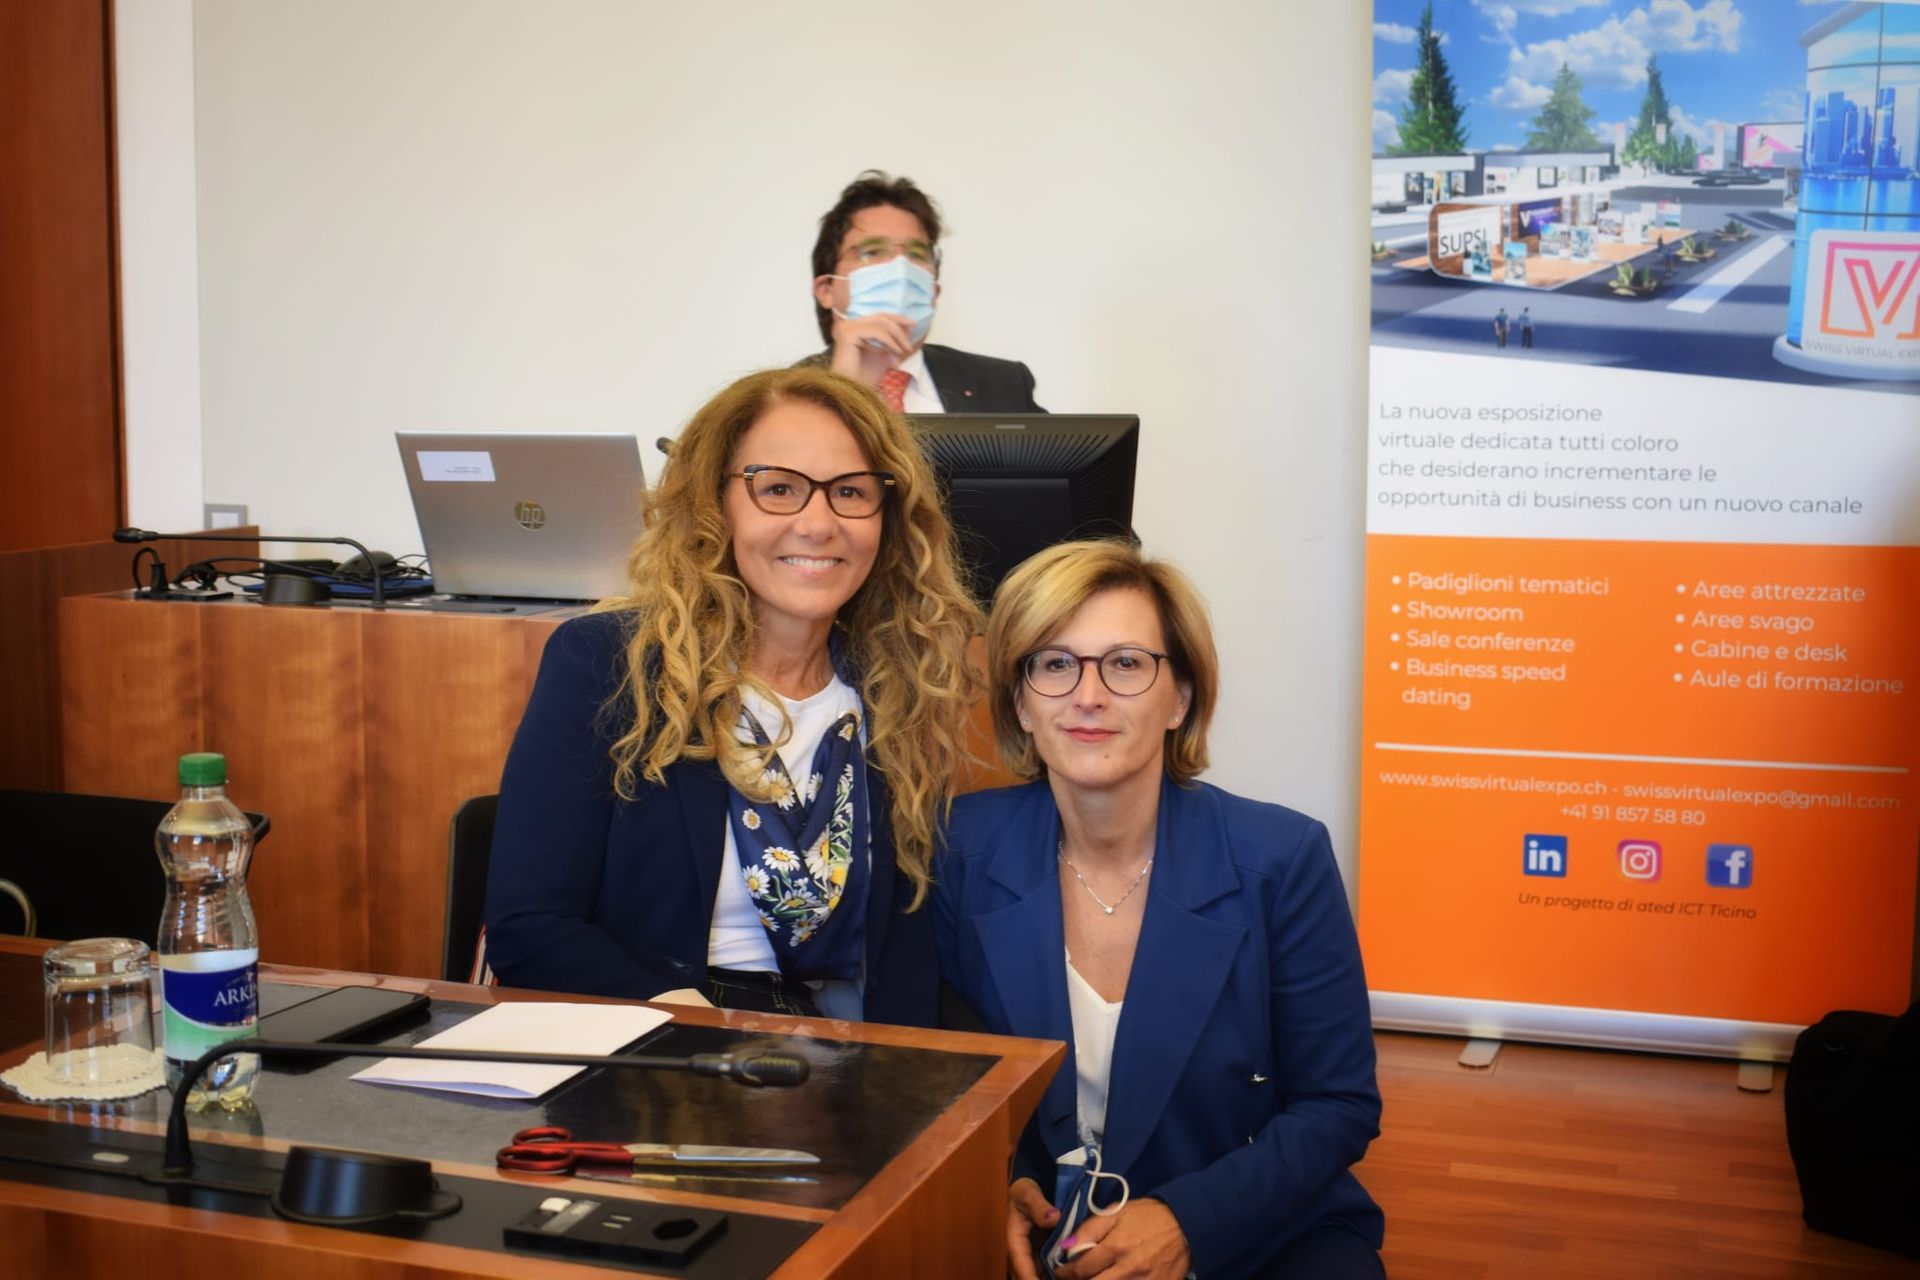 Milena Folletti, madrina dello "Swiss Virtual Expo" e Responsabile Programmazione della RSI, con Cristina Giotto, Direttrice dell'associazione ated-ICT Ticino